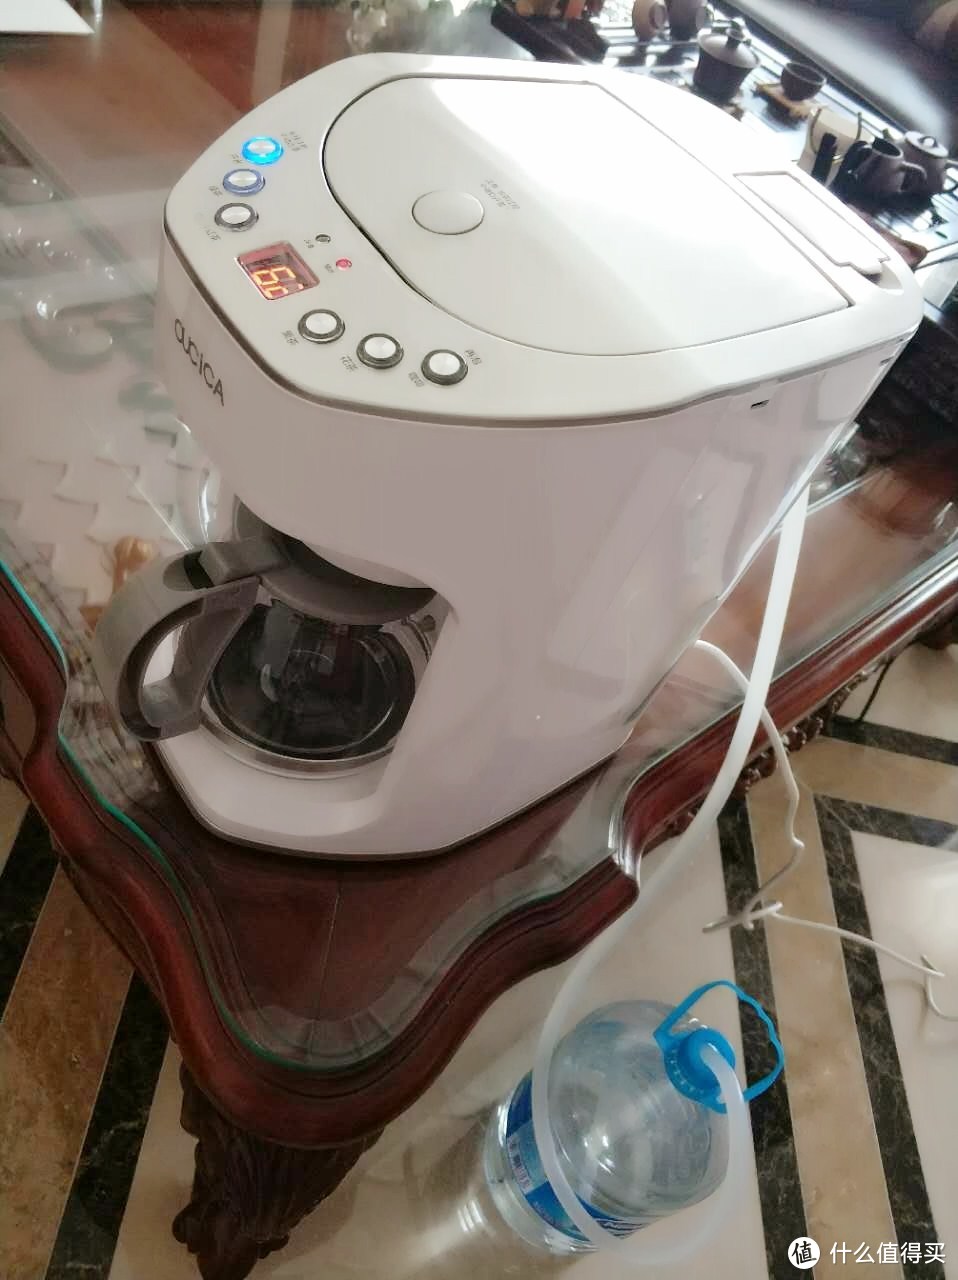 【首次众测】浅评欧思嘉全自动泡茶机